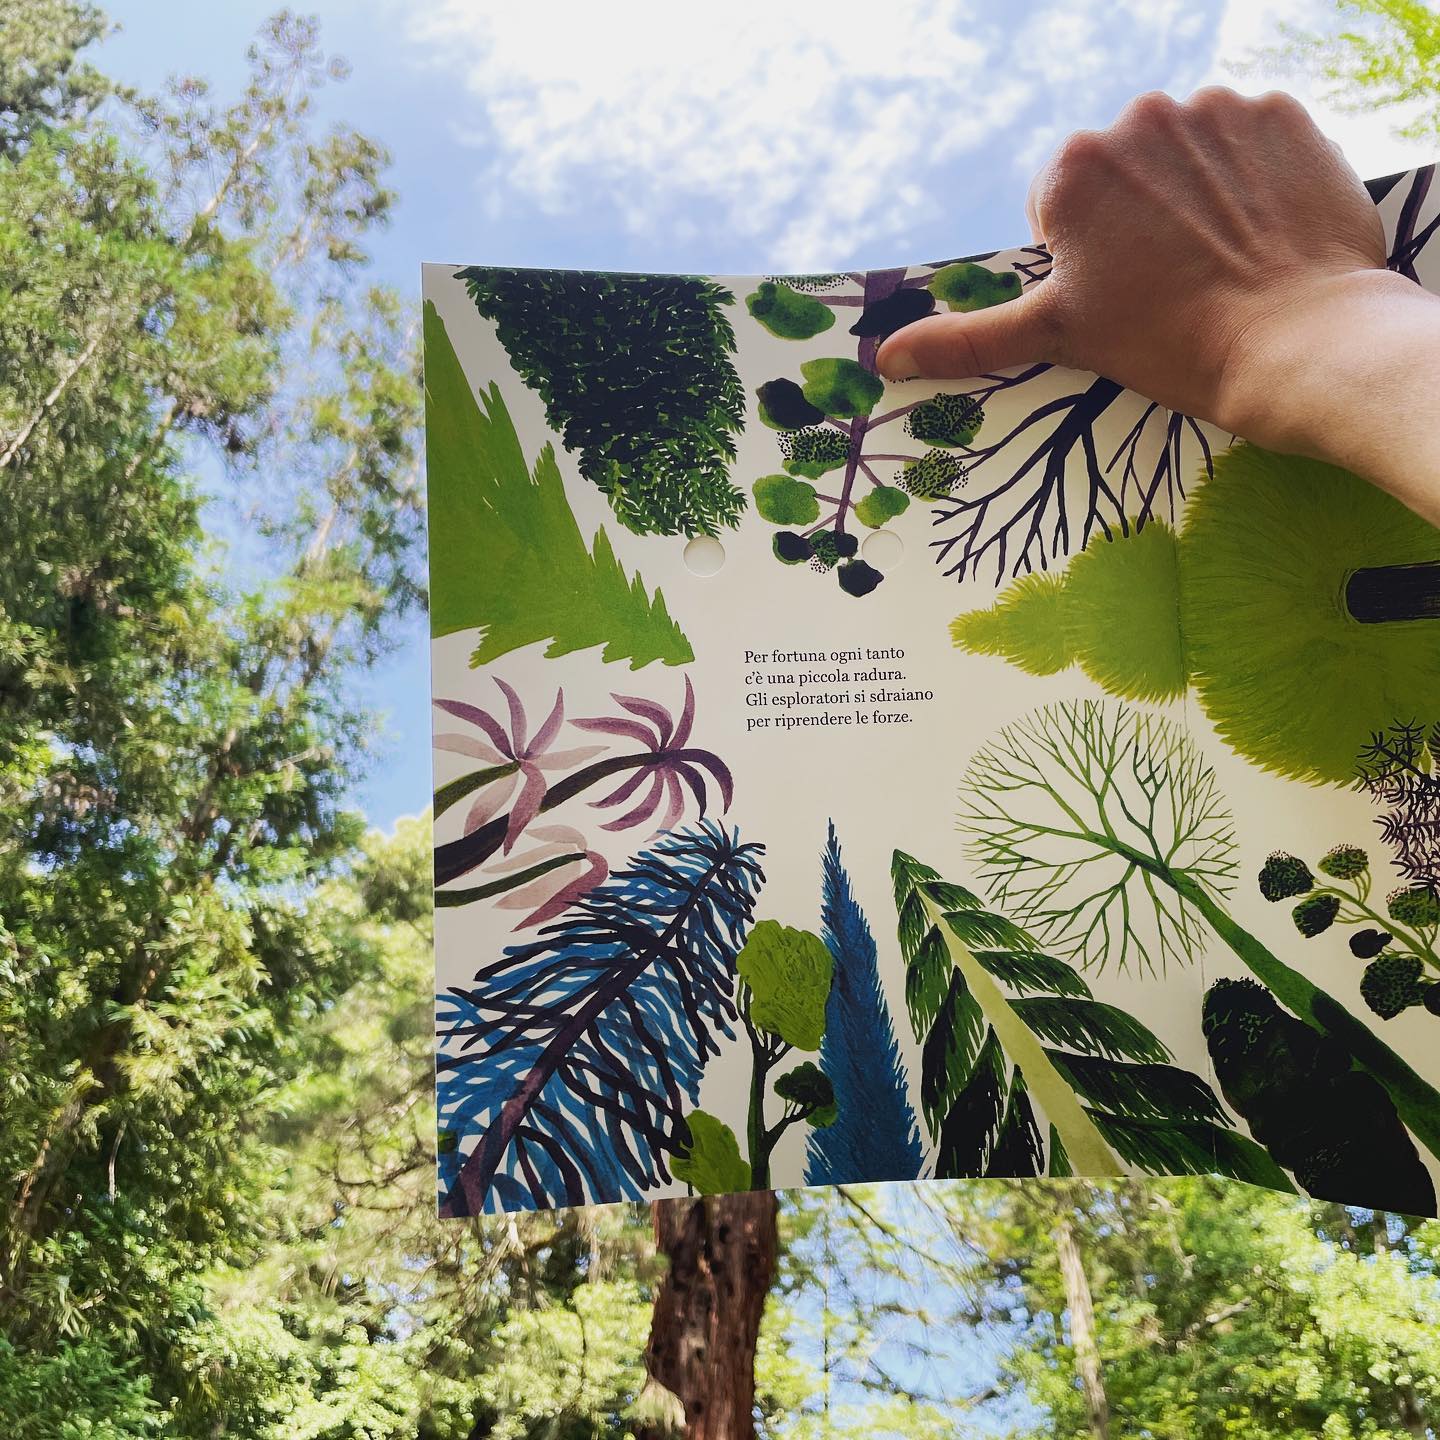 Il libro cult “La foresta” prende nuova vita dentro un parco botanico secolare